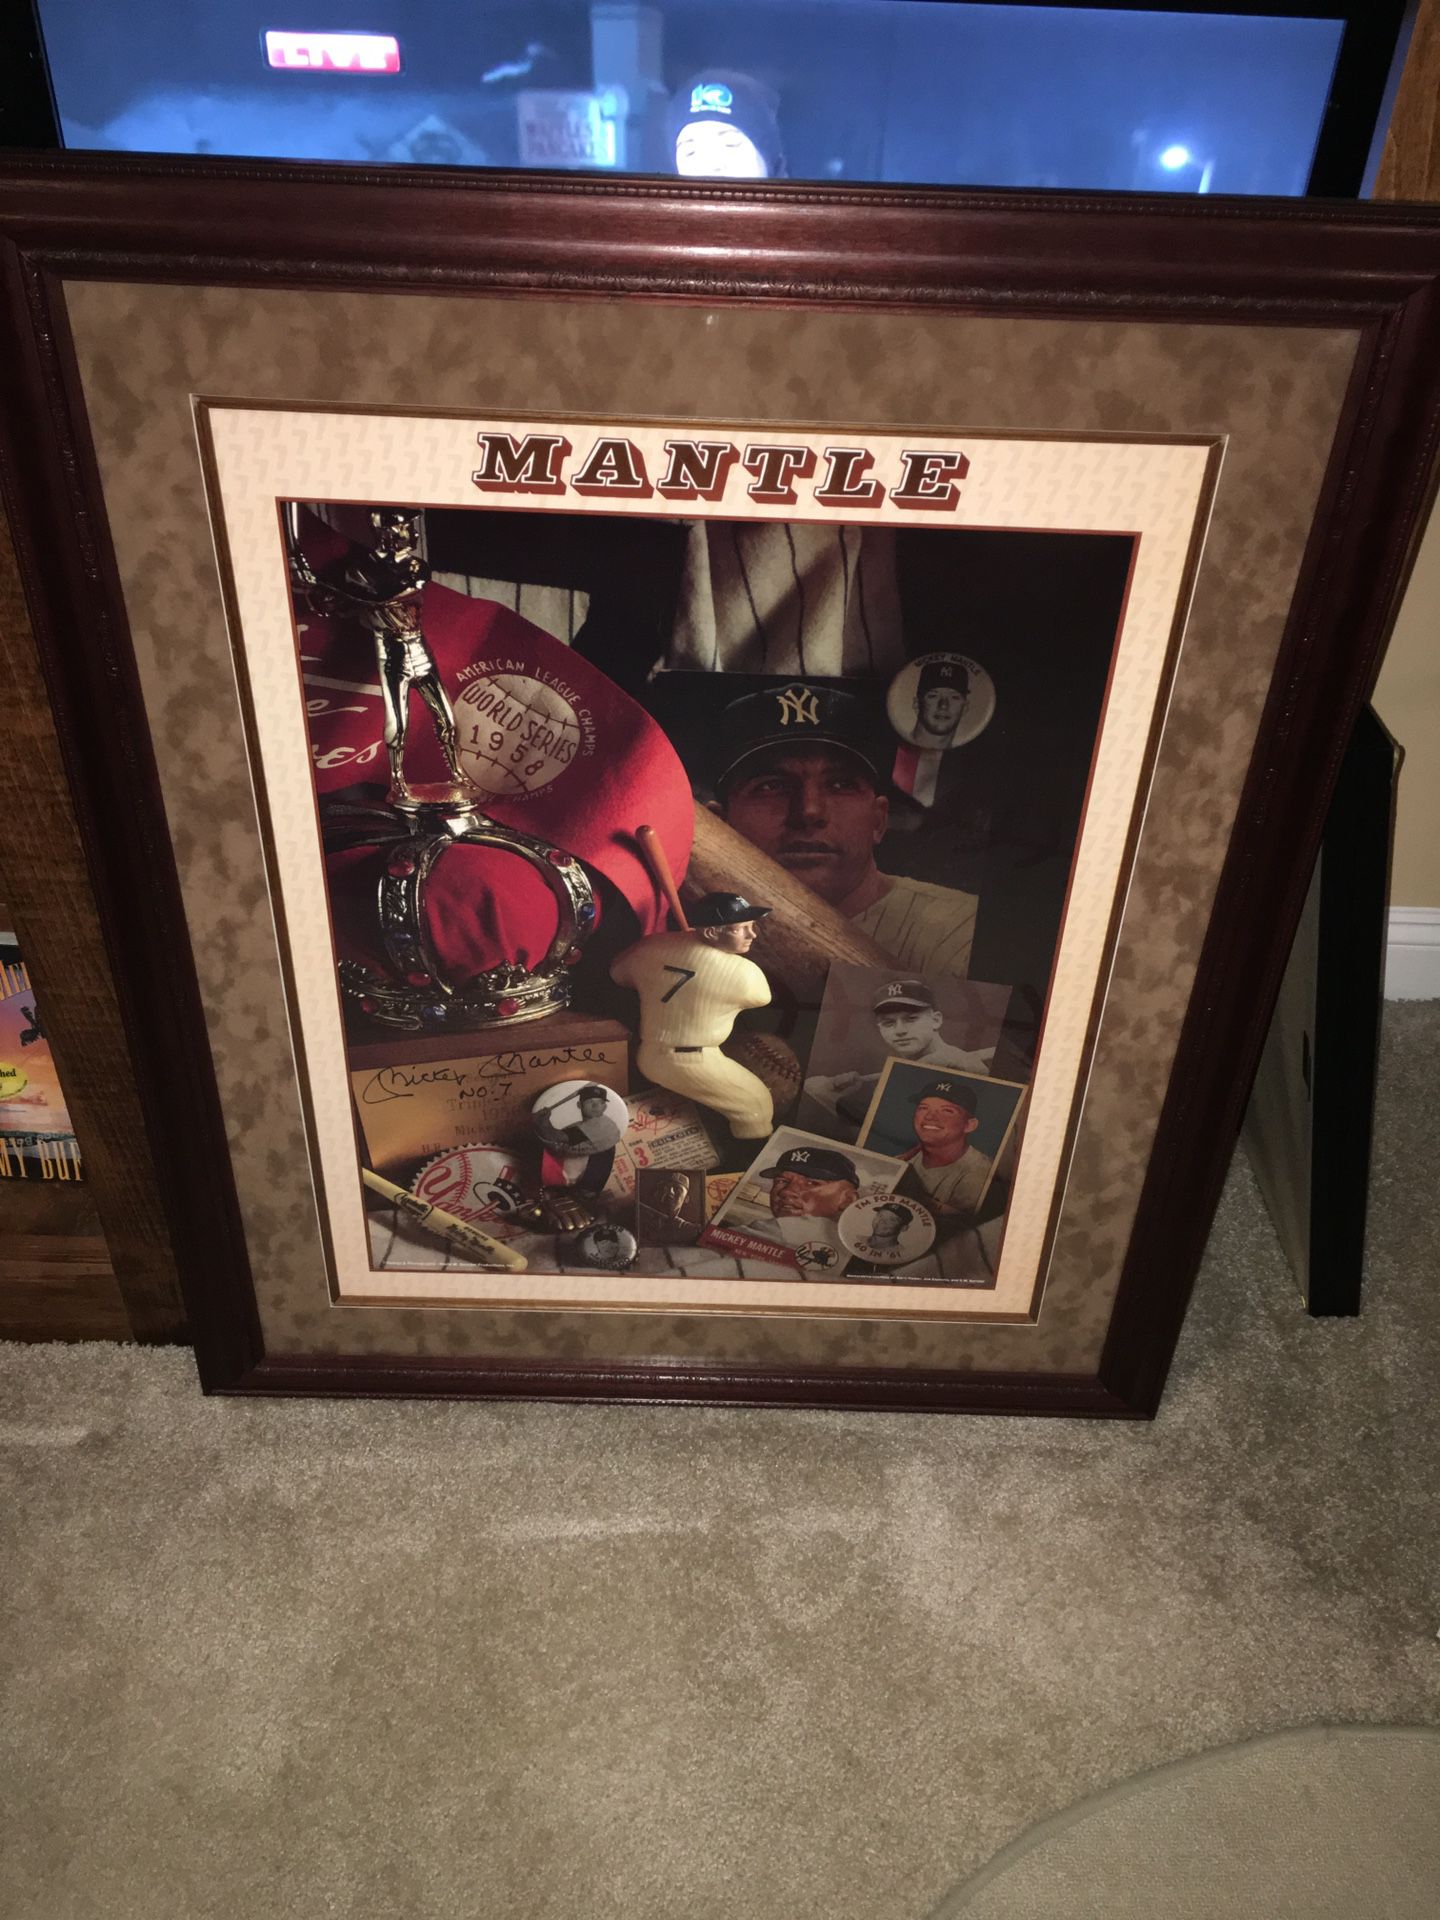 Mickey Mantle Autographed Print Framed (David Spindel Print)